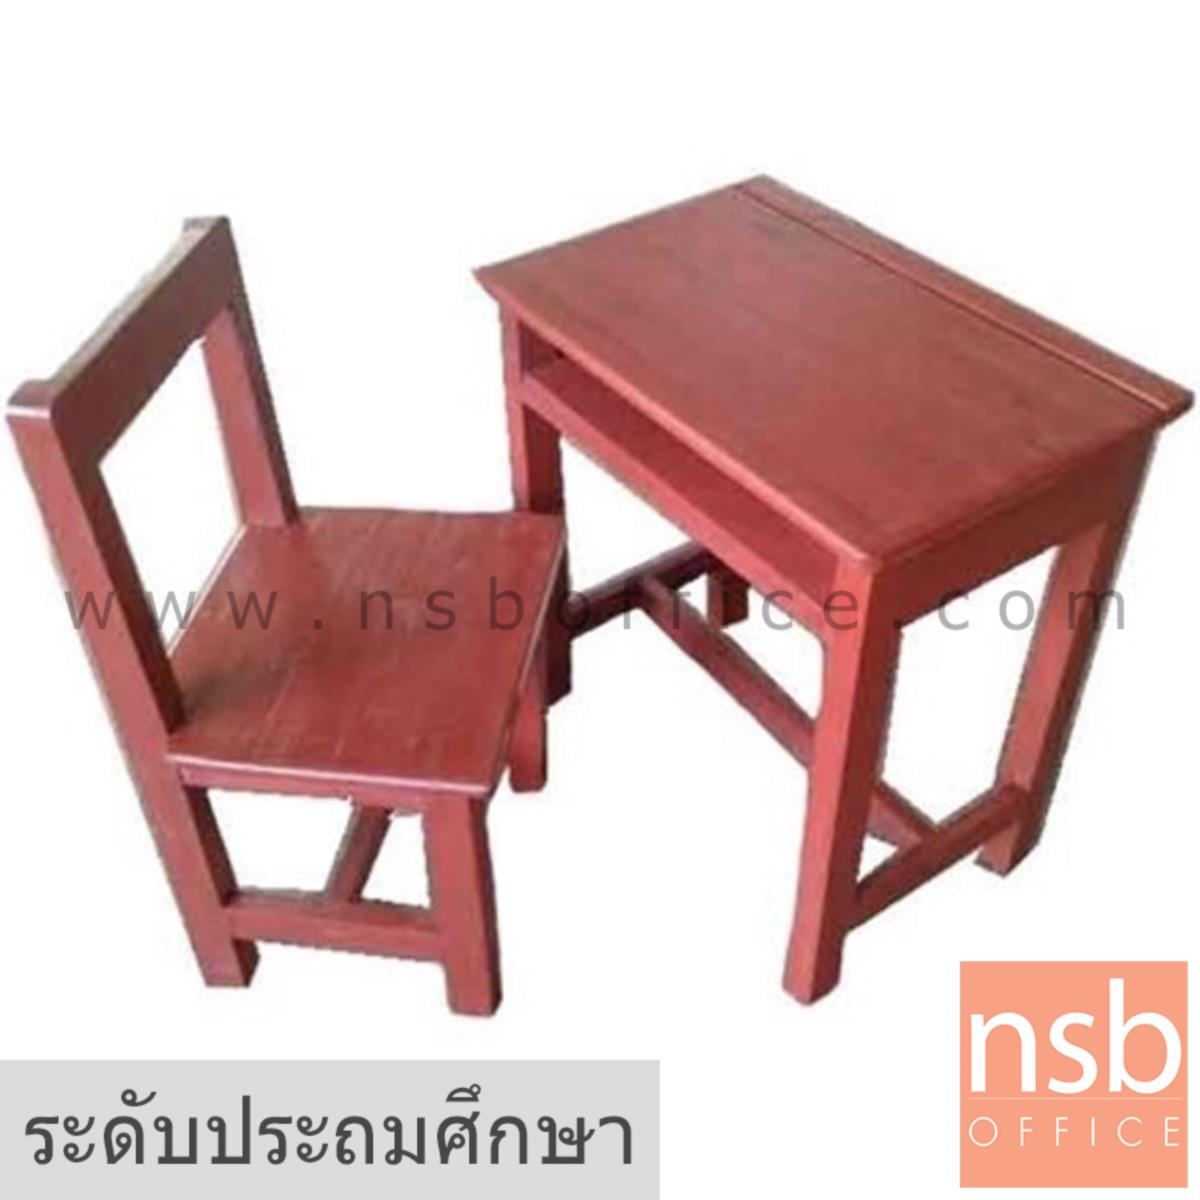 A17A064:ชุดโต๊ะและเก้าอี้นักเรียนไม้แข็งล้วน รุ่น MASSACHUSETTS (แมสสาซูเสตส์)  ระดับประถมศึกษา